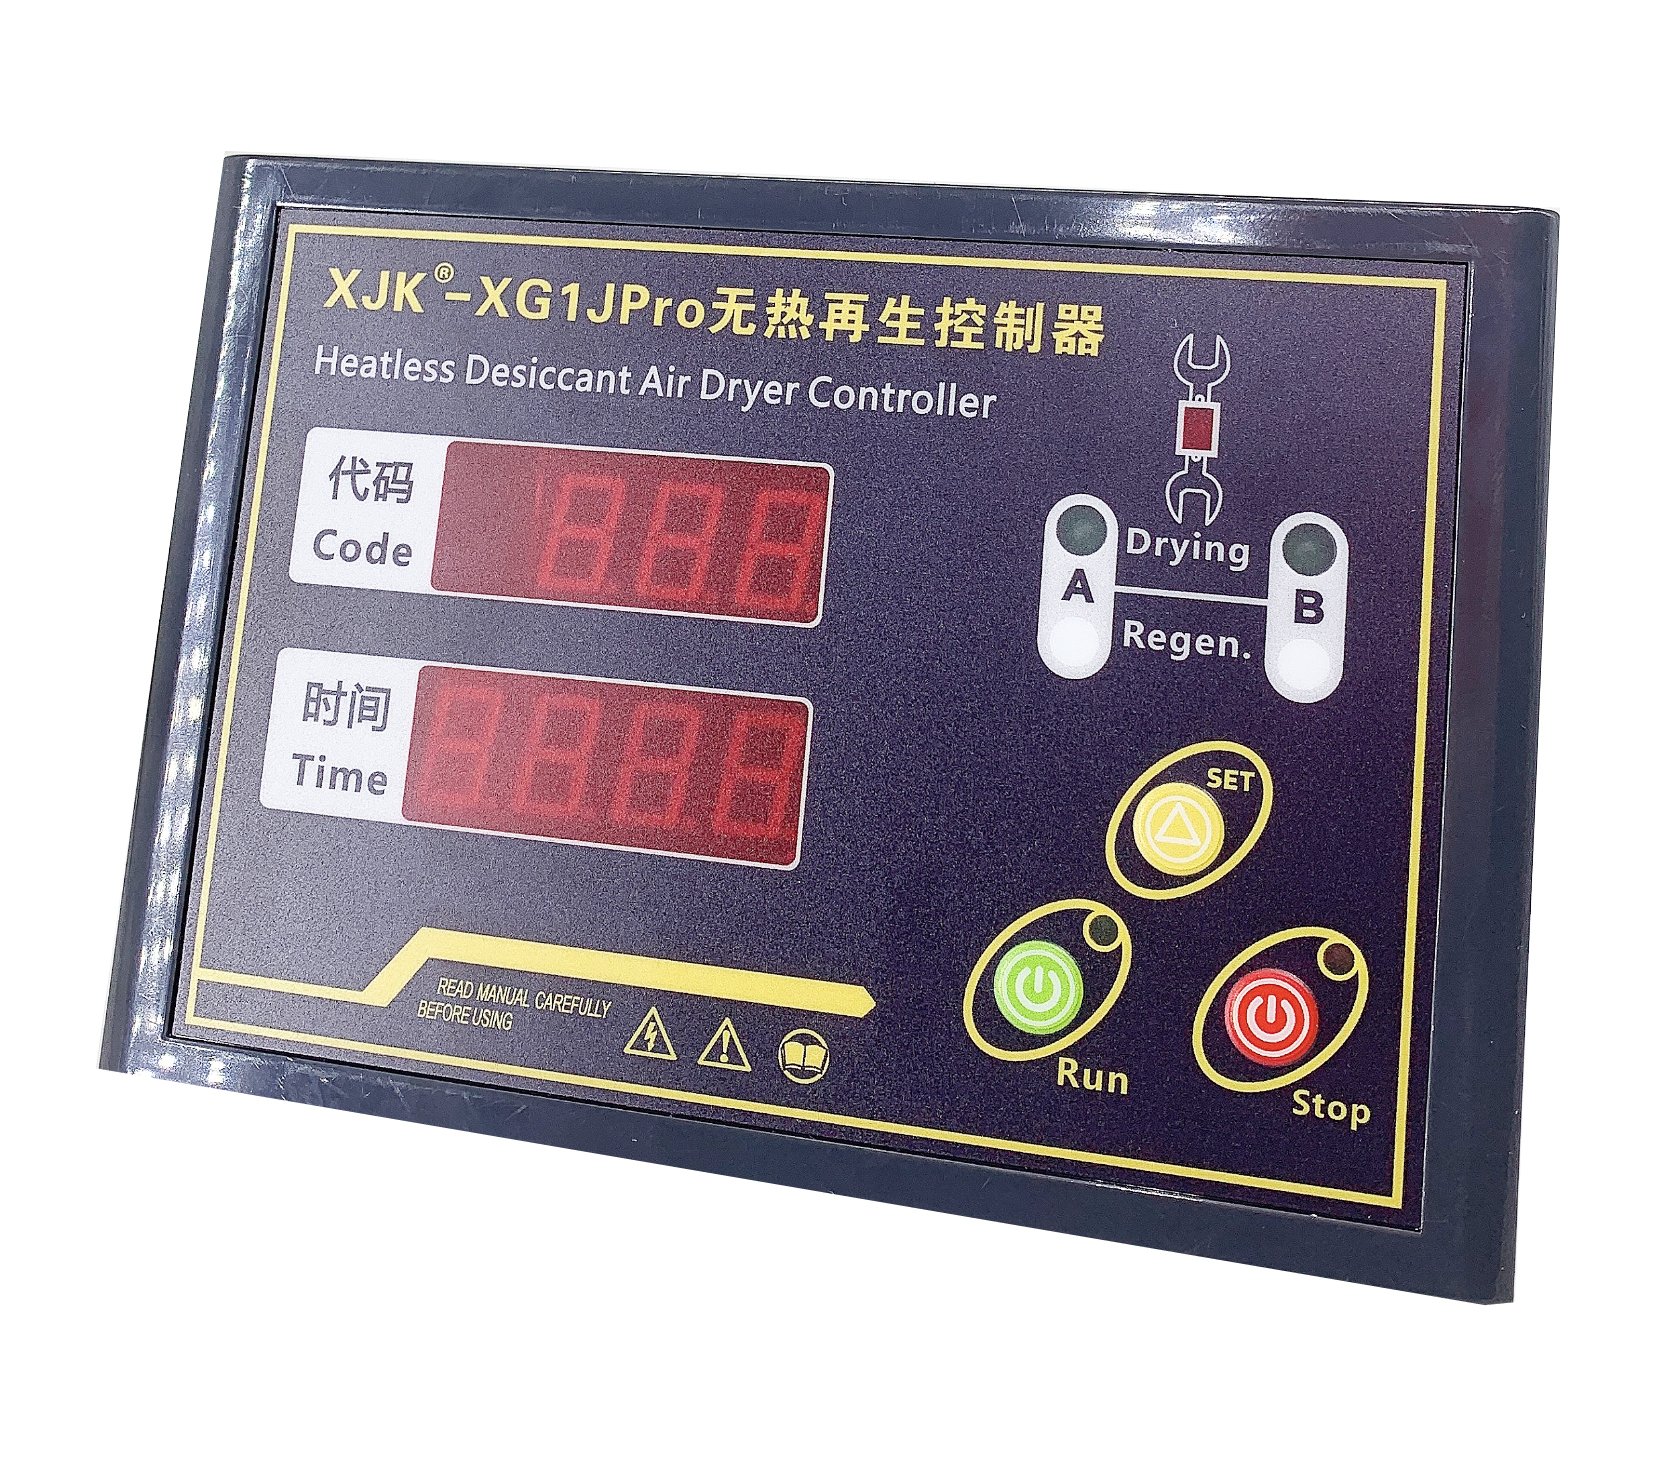 XJK-XG1J Pro无热吸干机控制器 带保养提示